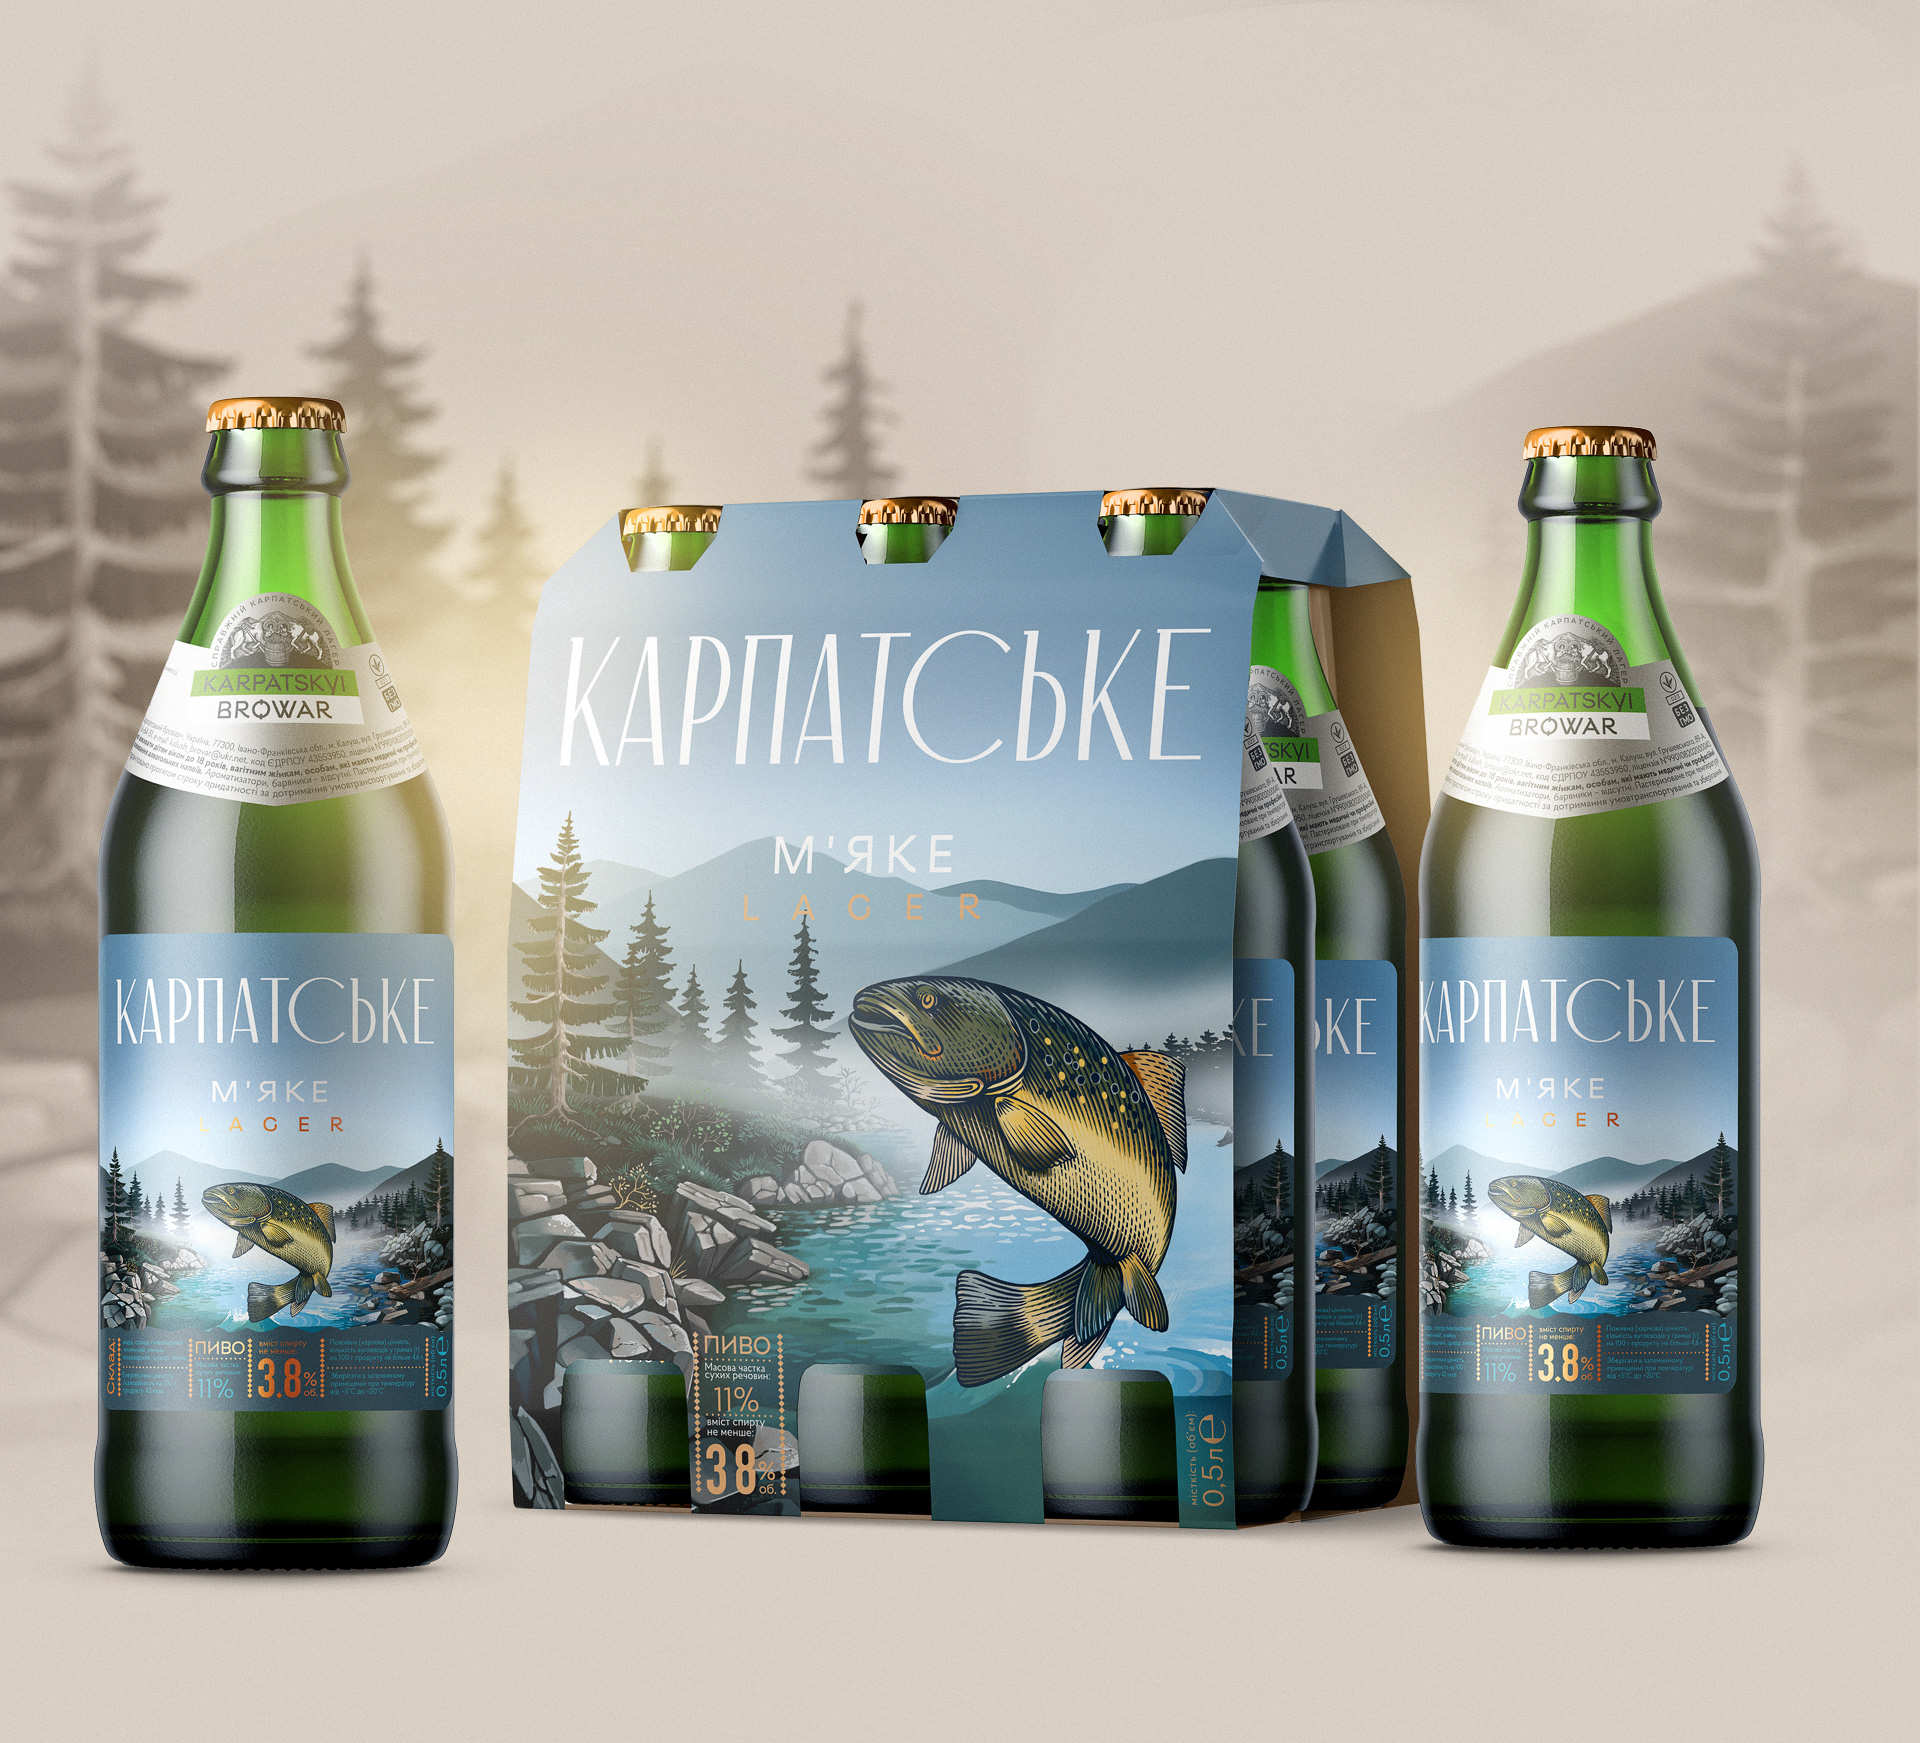 Karpatske. Branding project for beer.